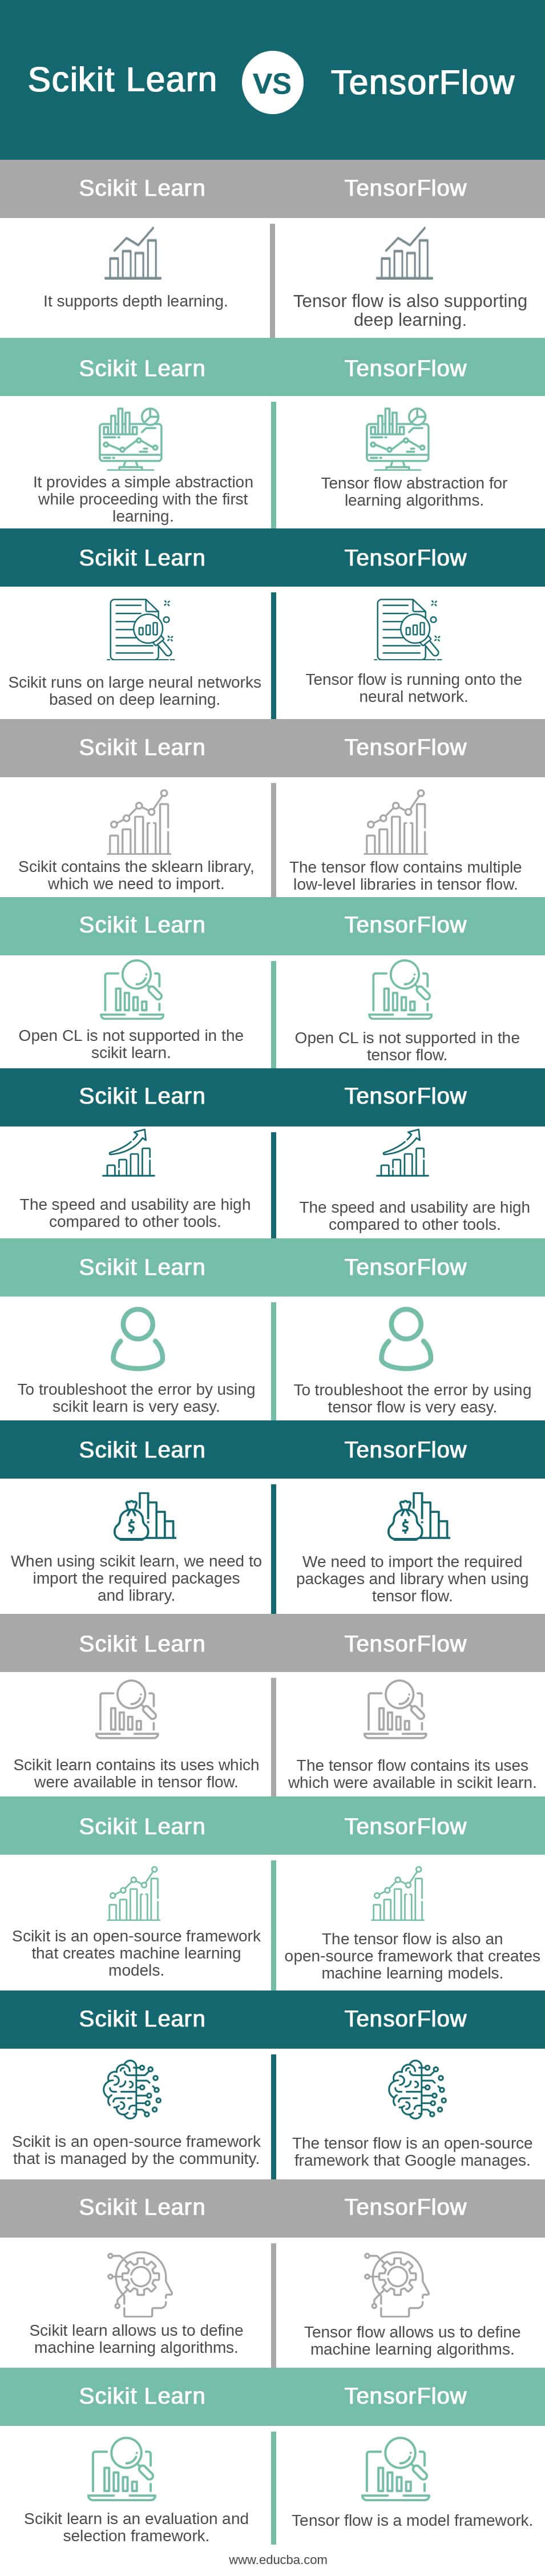 Scikit-Learn-vs-TensorFlow-info